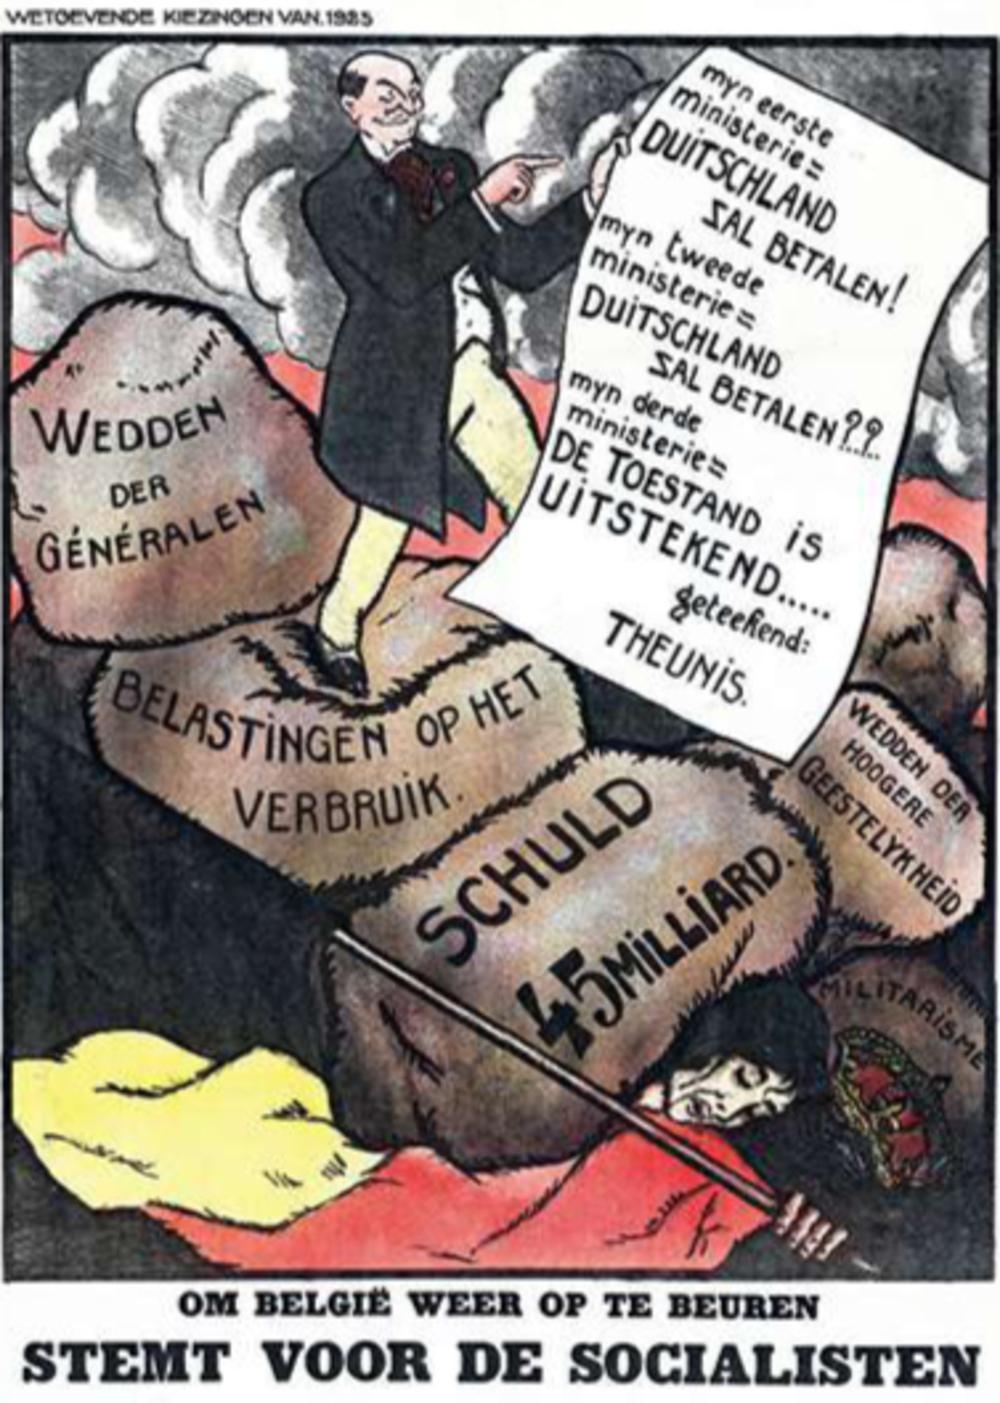 In deze karikatuur wijzen de socialisten erop dat de regering veel te veel illusies koestert als het gaat over de Duitse herstelbetalingen. Eind 1922 heeft België nog maar 4,5 miljard van de beloofde 31,6 miljard frank ontvangen.